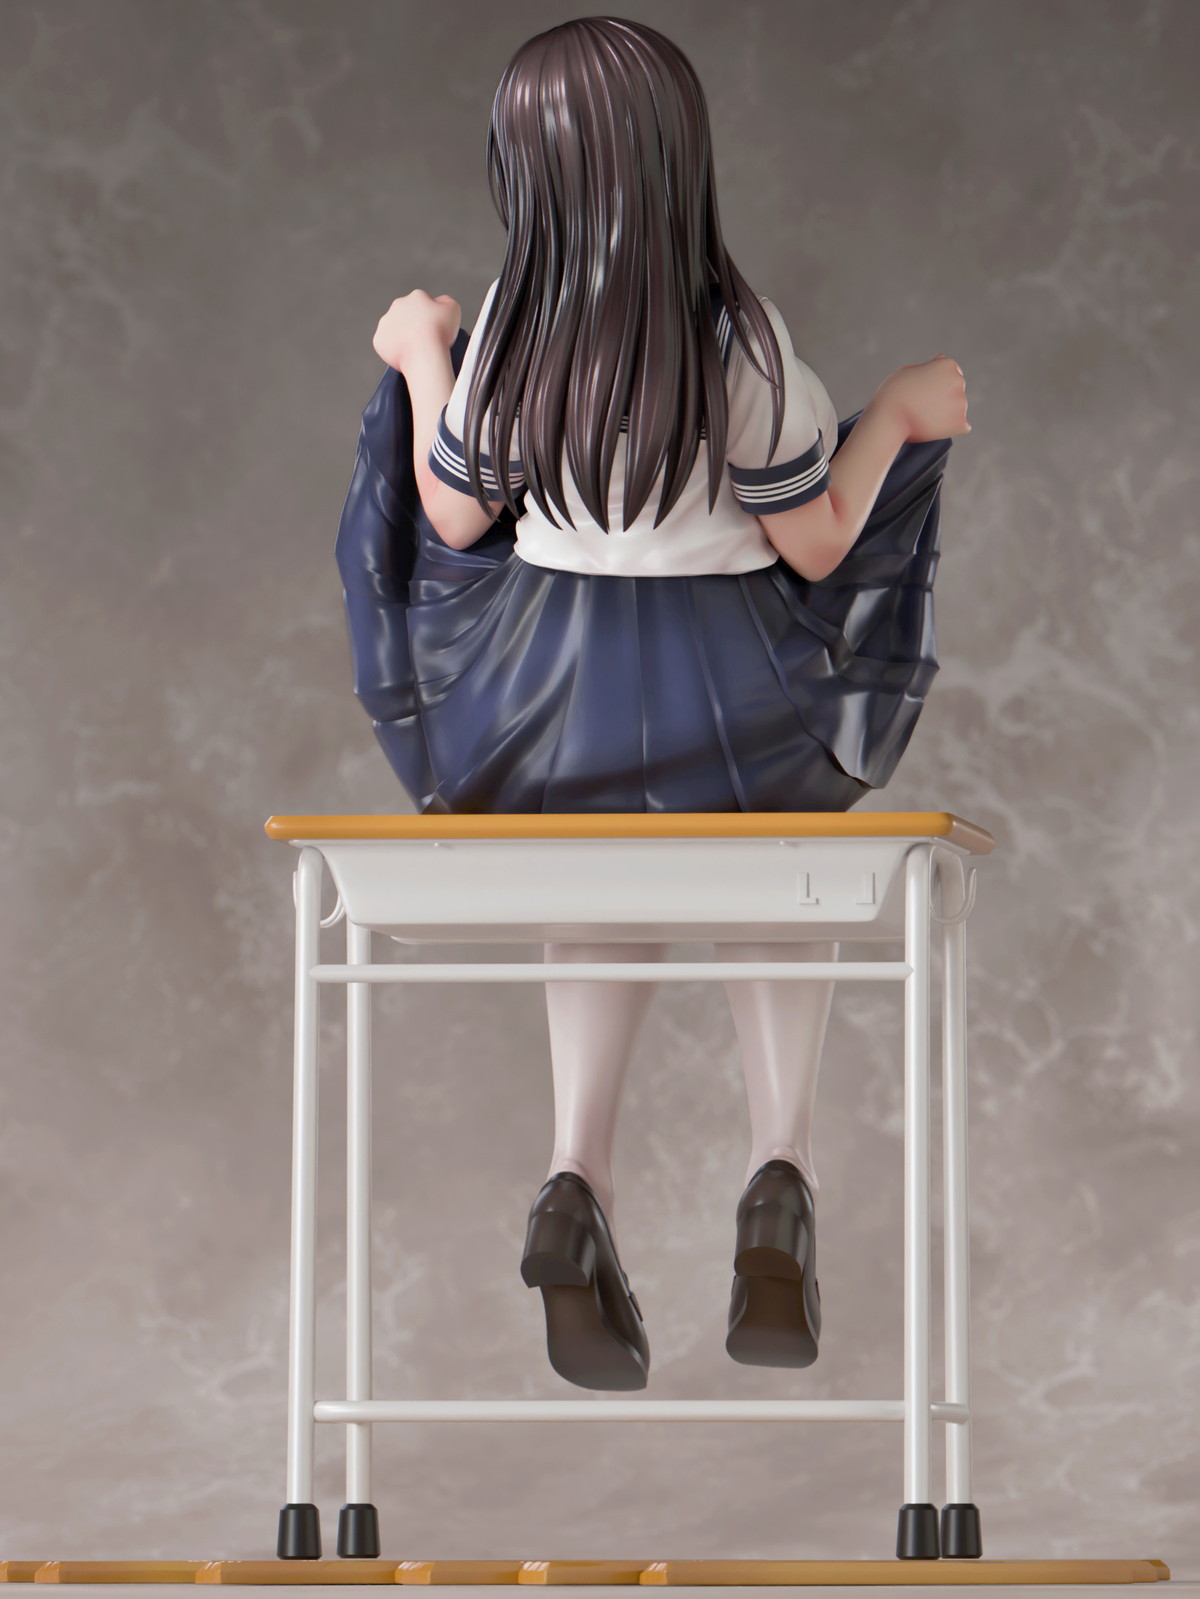 加瀬大輝氏オリジナルイラスト「教室でたくし上げJKさん」のフィギュア画像